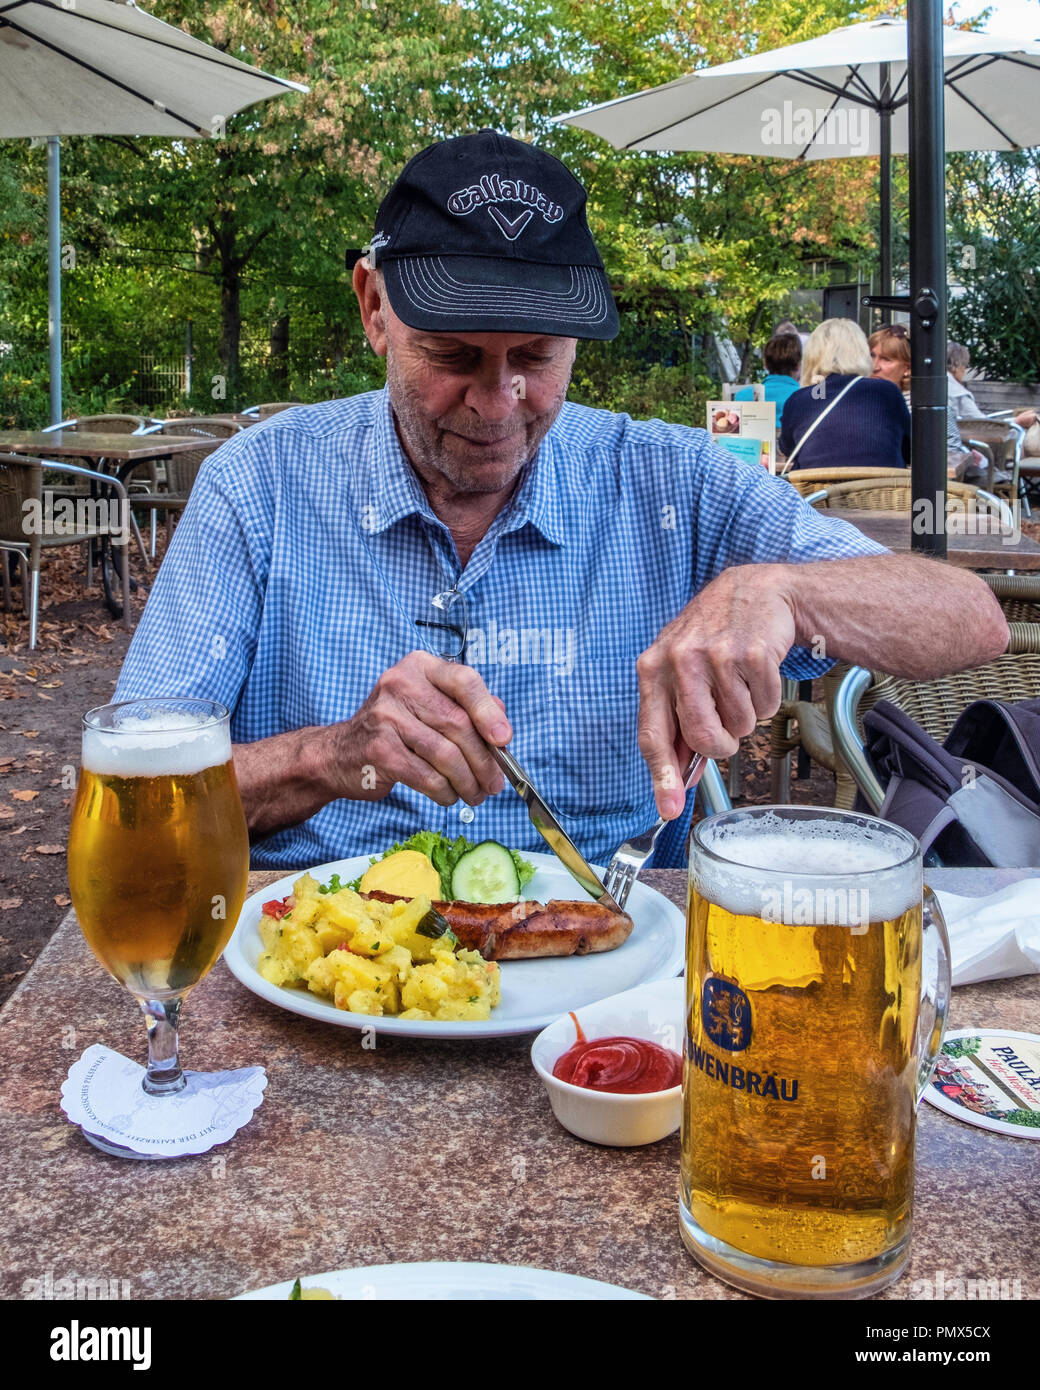 Berlin, Neukölln, Britzer Jardin. Hauts homme jouit le déjeuner de saucisses, salade de pomme de terre et la moutarde à la bière avec repas table d'extérieur de snack-bar offrant te Banque D'Images